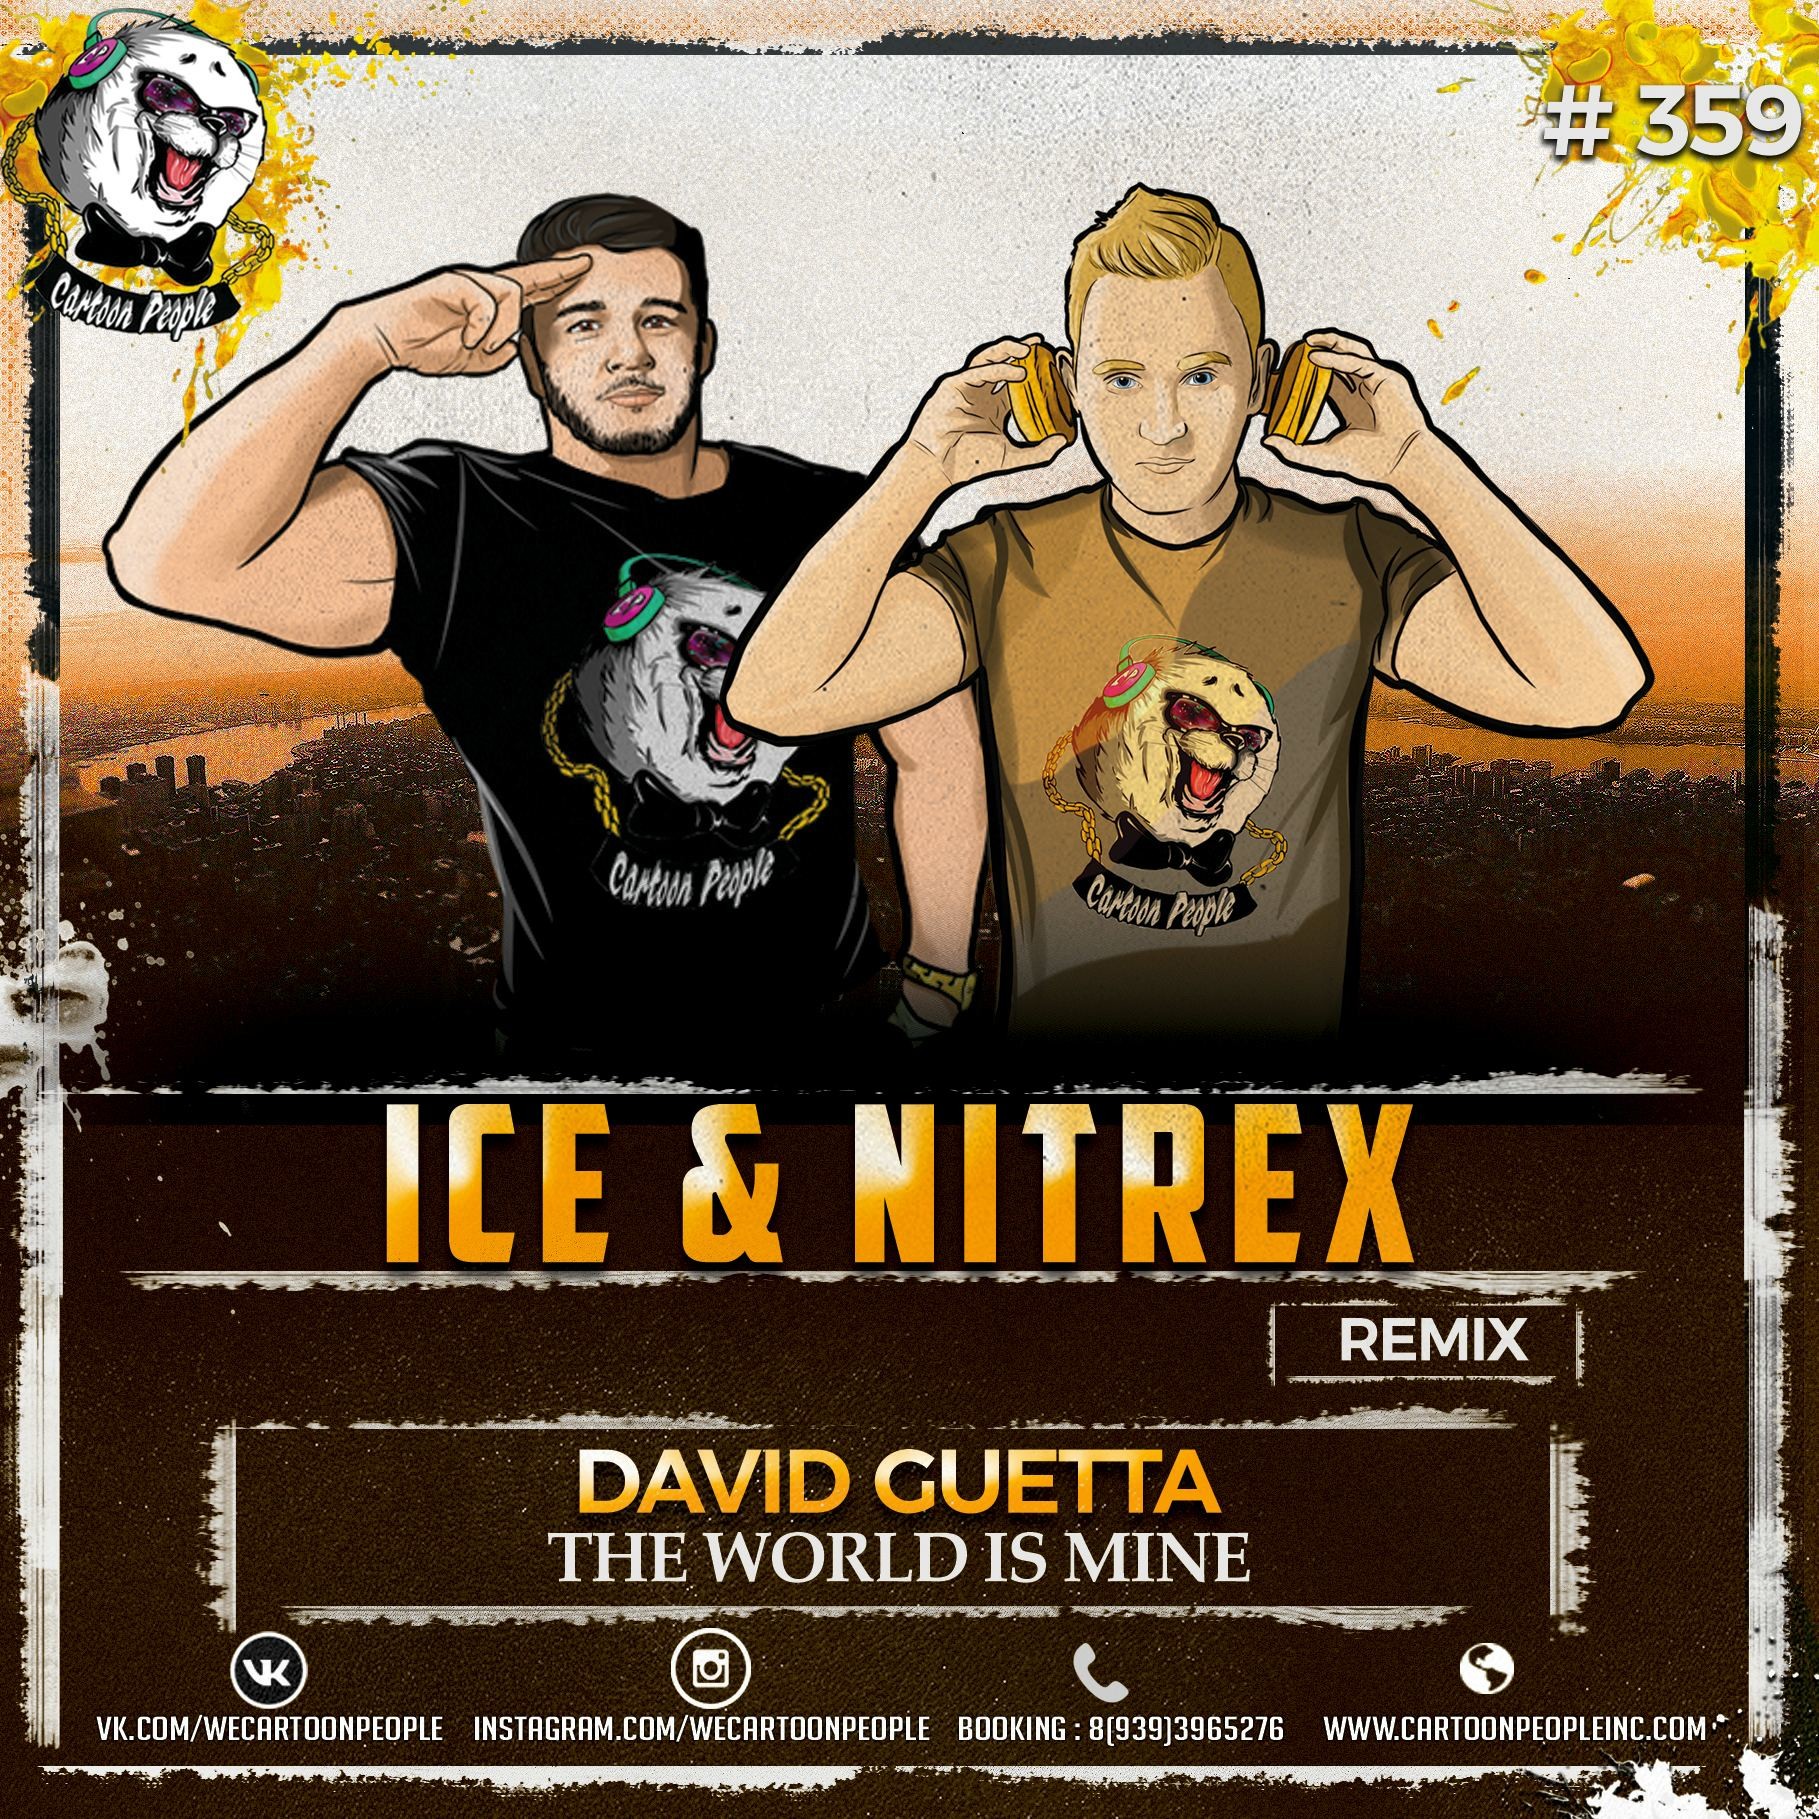 David guetta world is mine. David Guetta the World is mine. David Guetta the World is mine Remix. Ice & Nitrex. The World is mine (2004) David Guetta.